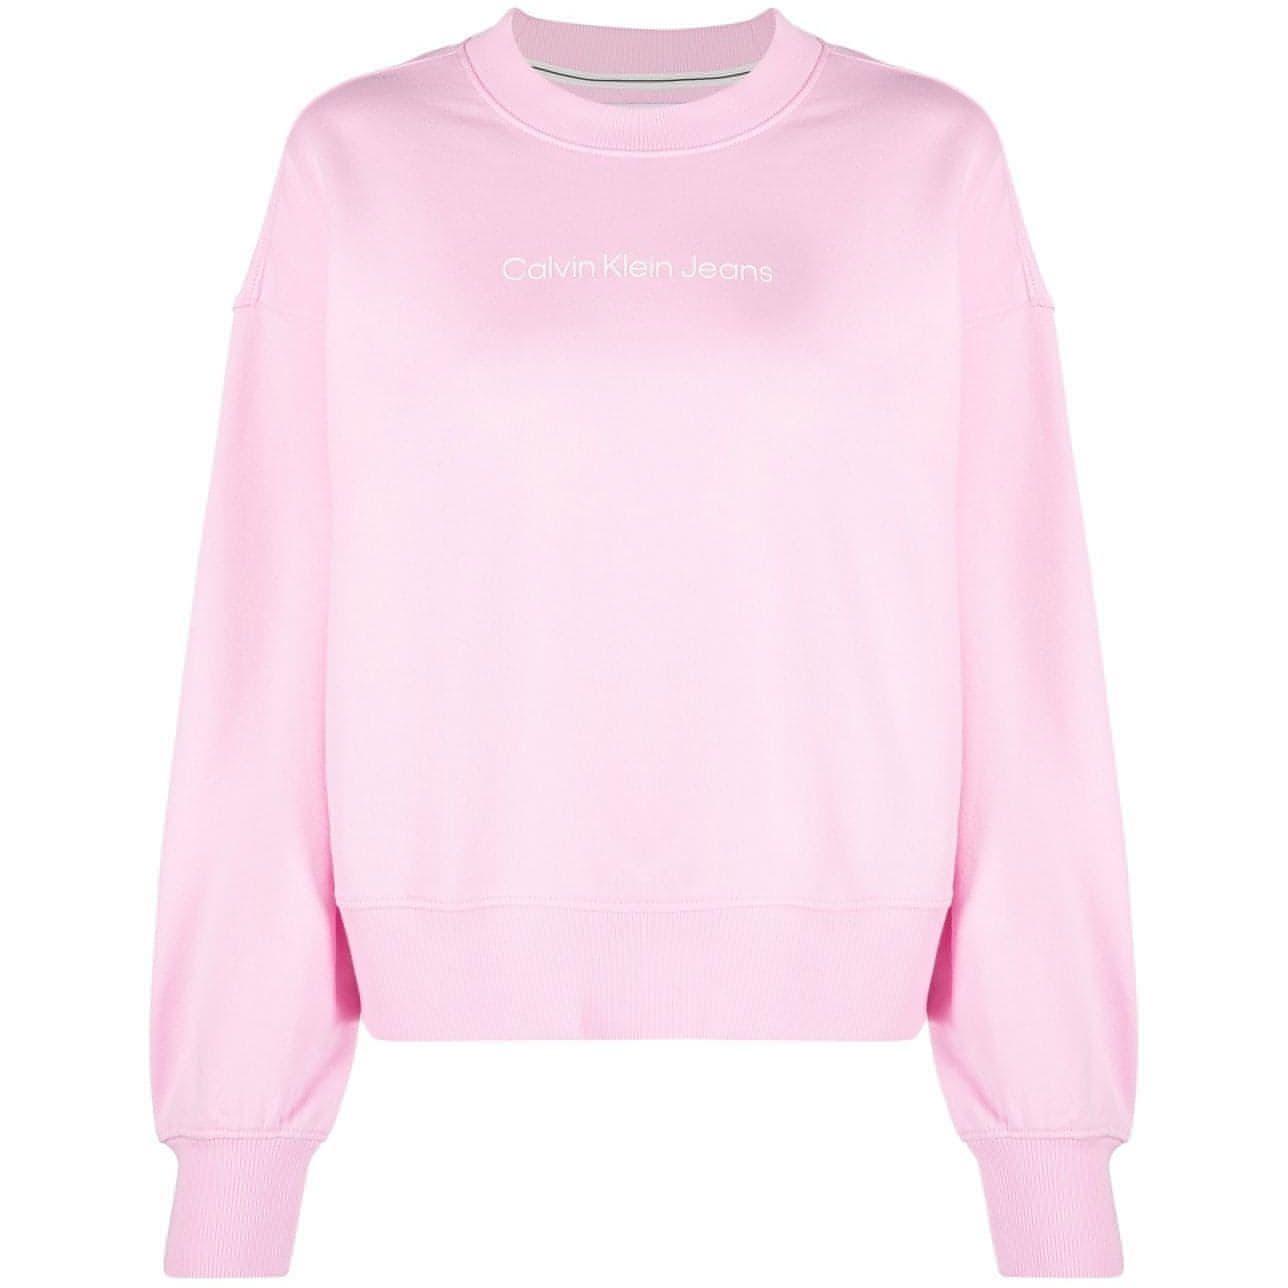 CALVIN KLEIN JEANS moteriškas šviesiai rožinis medvilninis džemperis